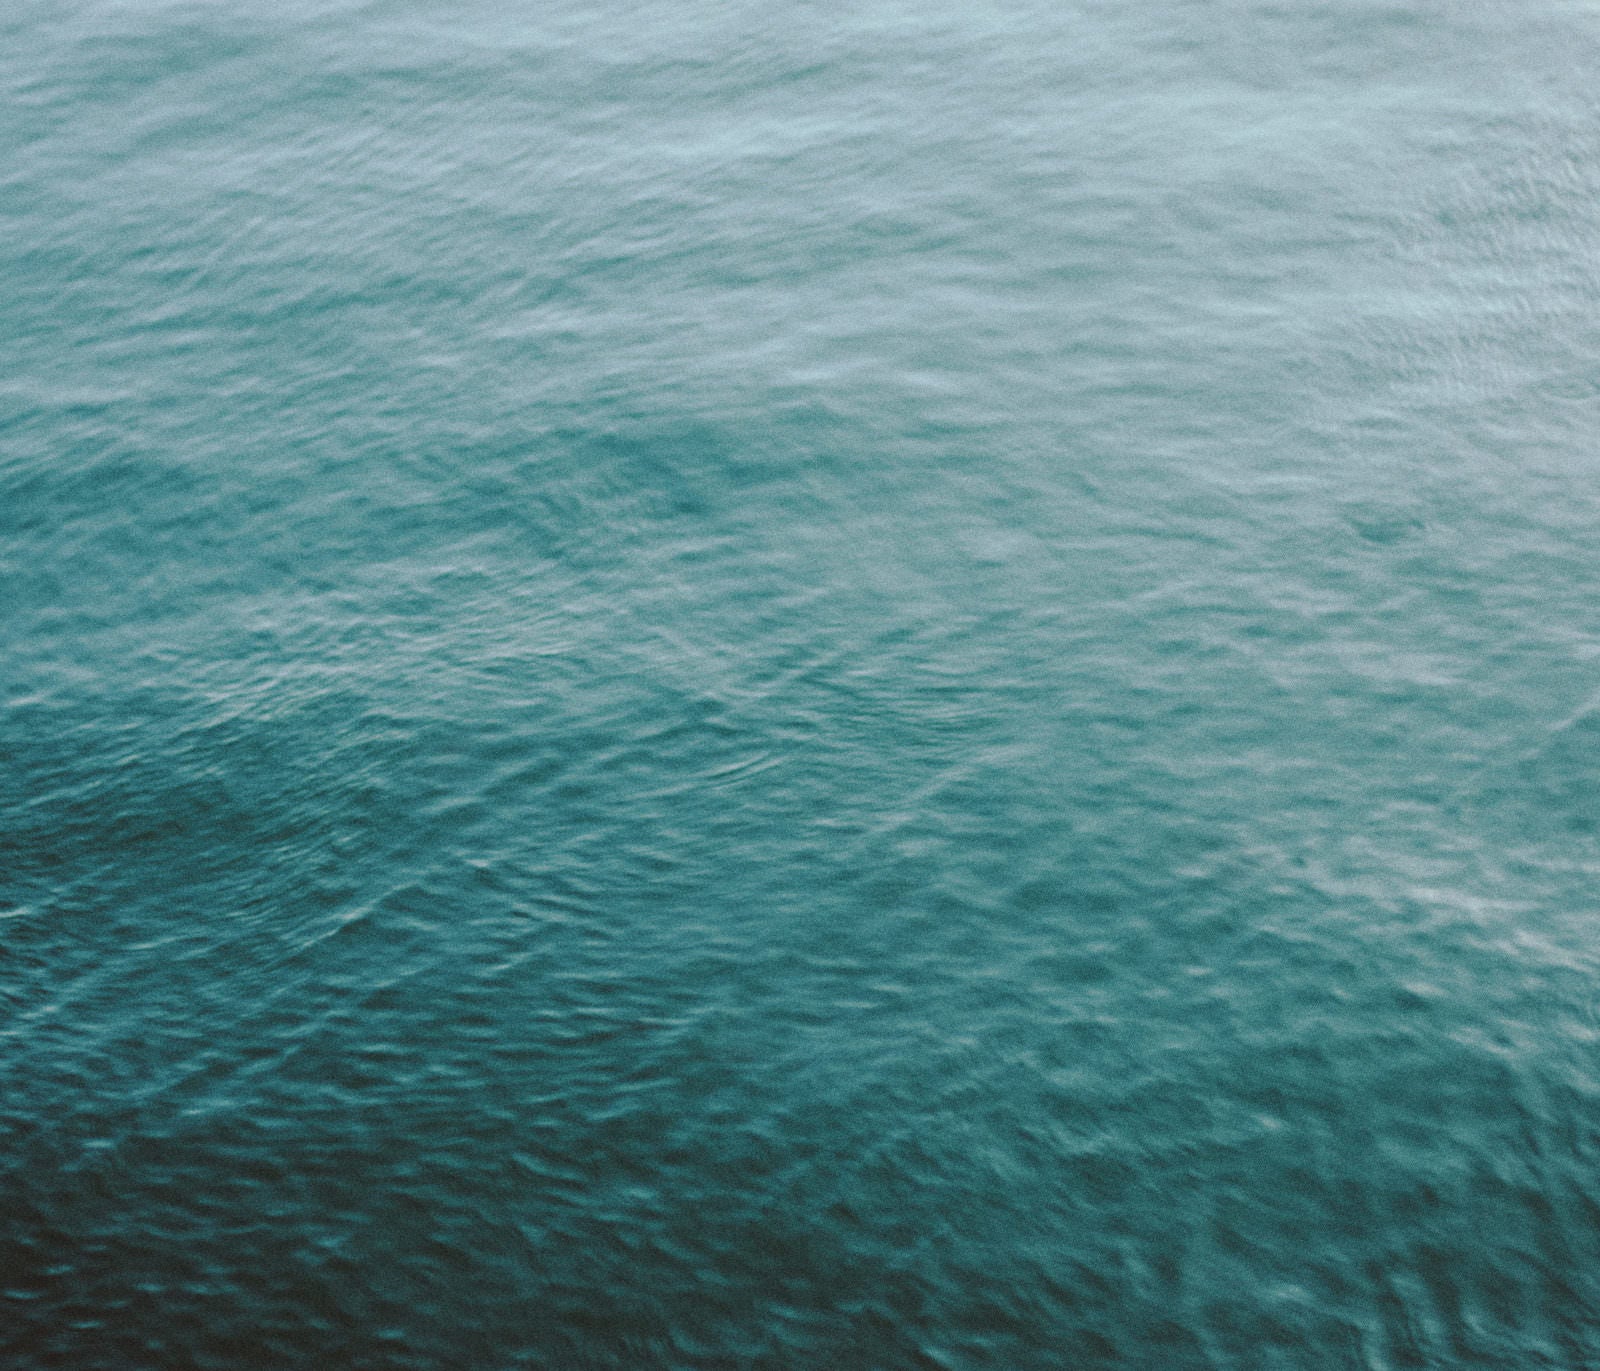 「請戸漁港で撮影した海」の写真